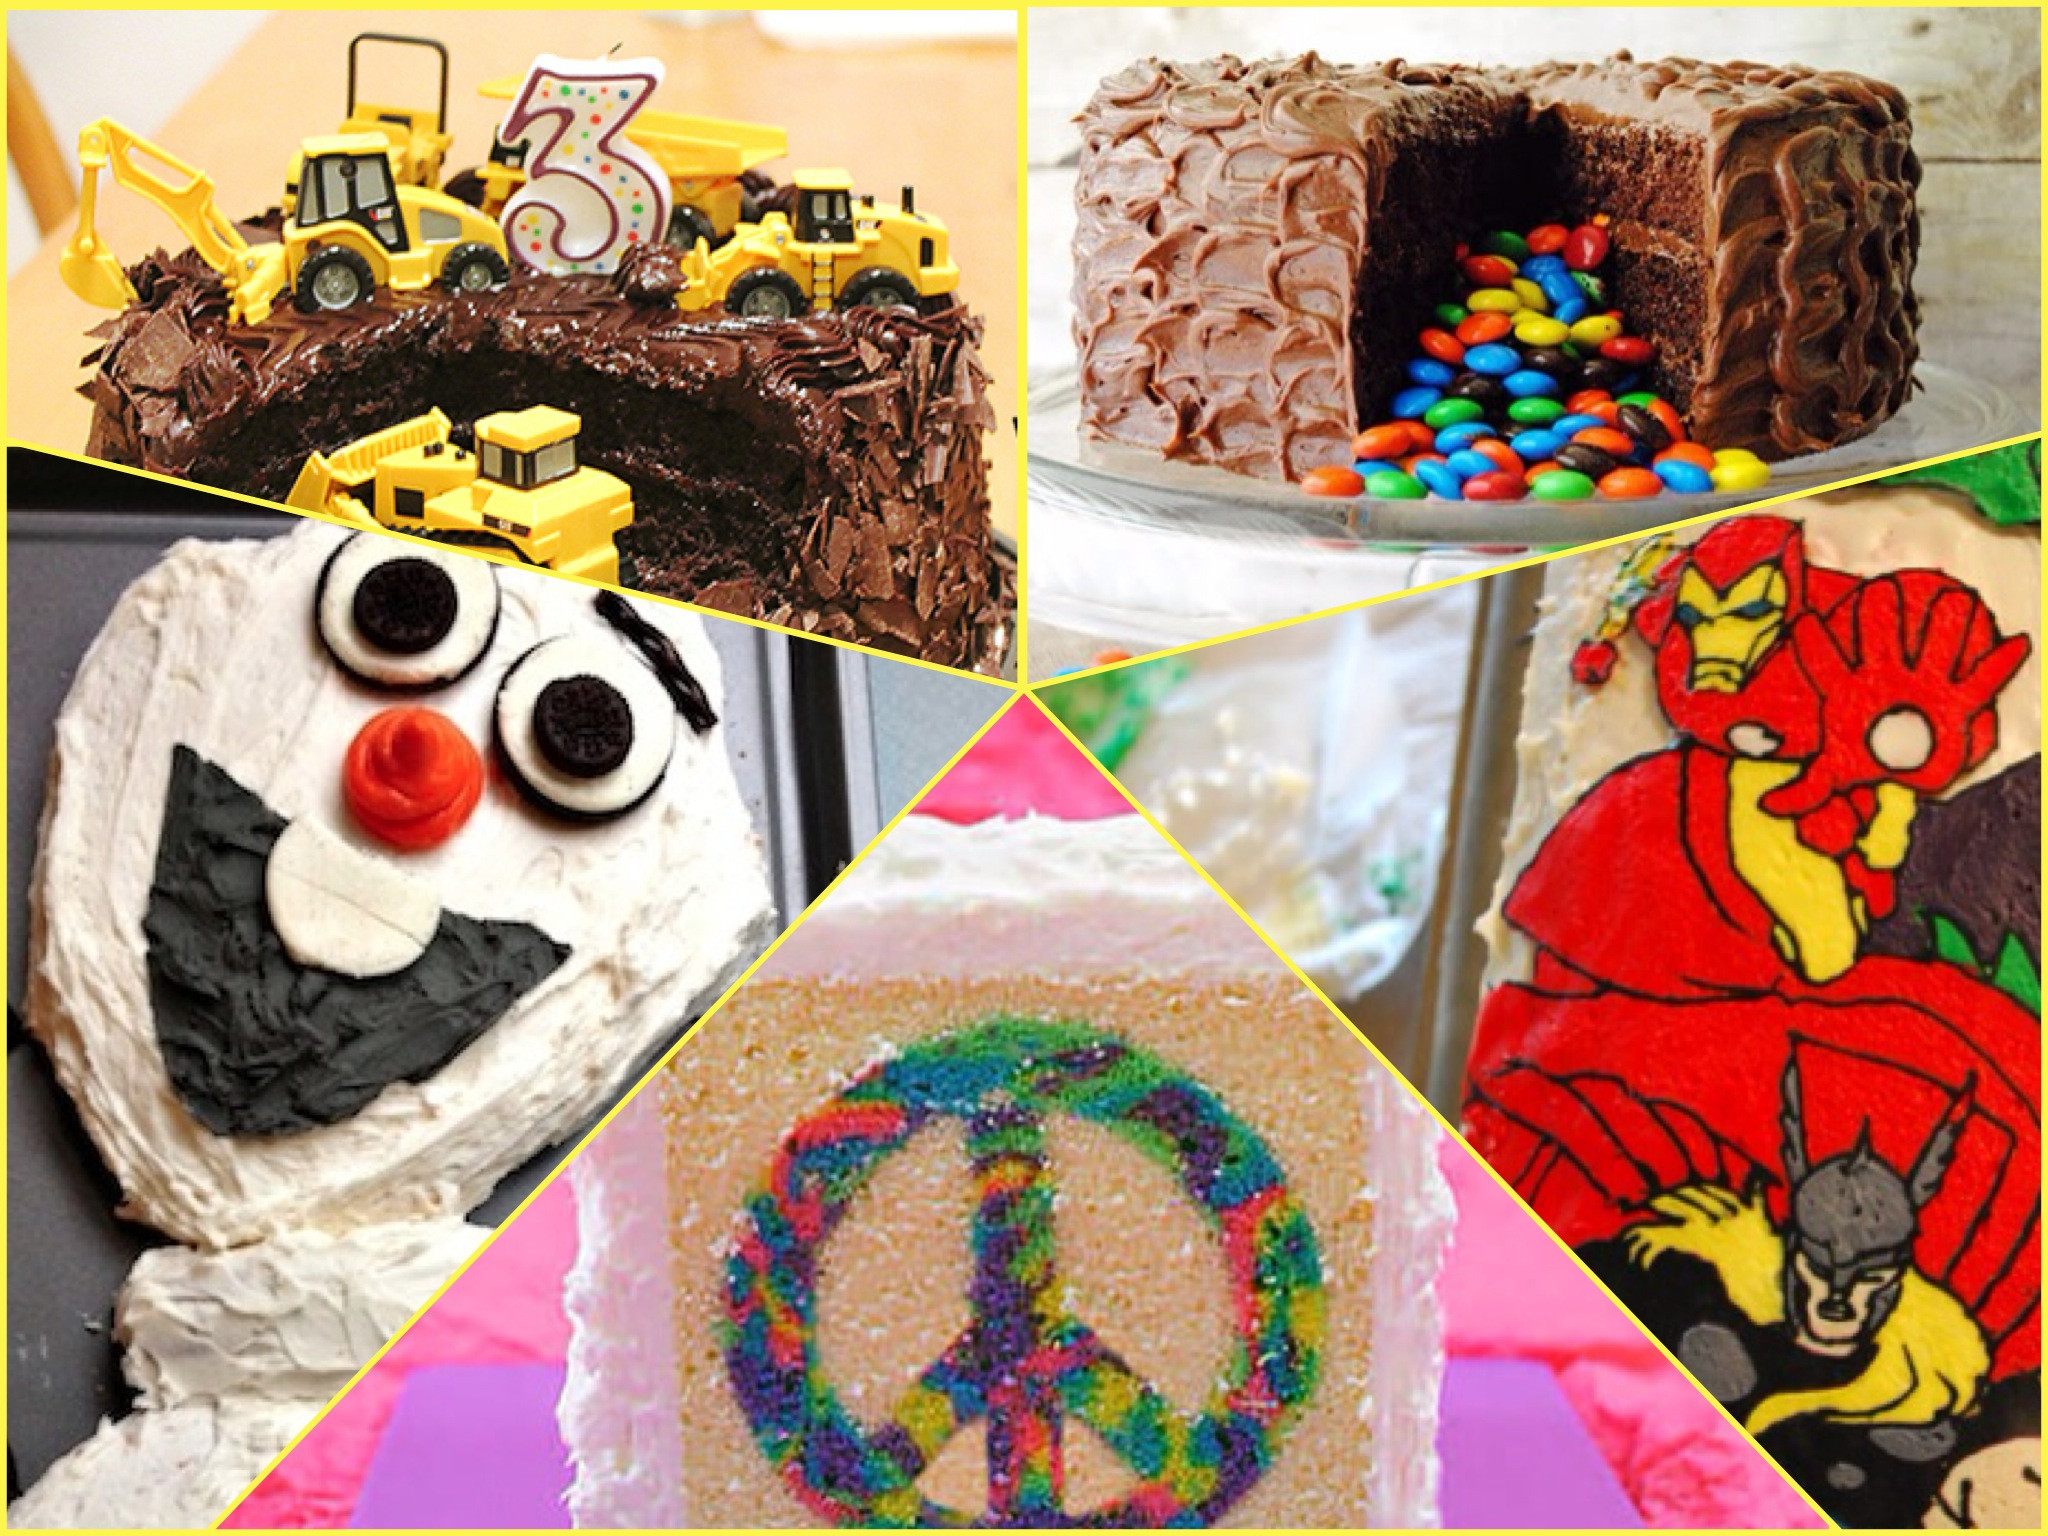 Fun Birthday Cake Ideas
 10 Easy Birthday Cake Ideas for Kids